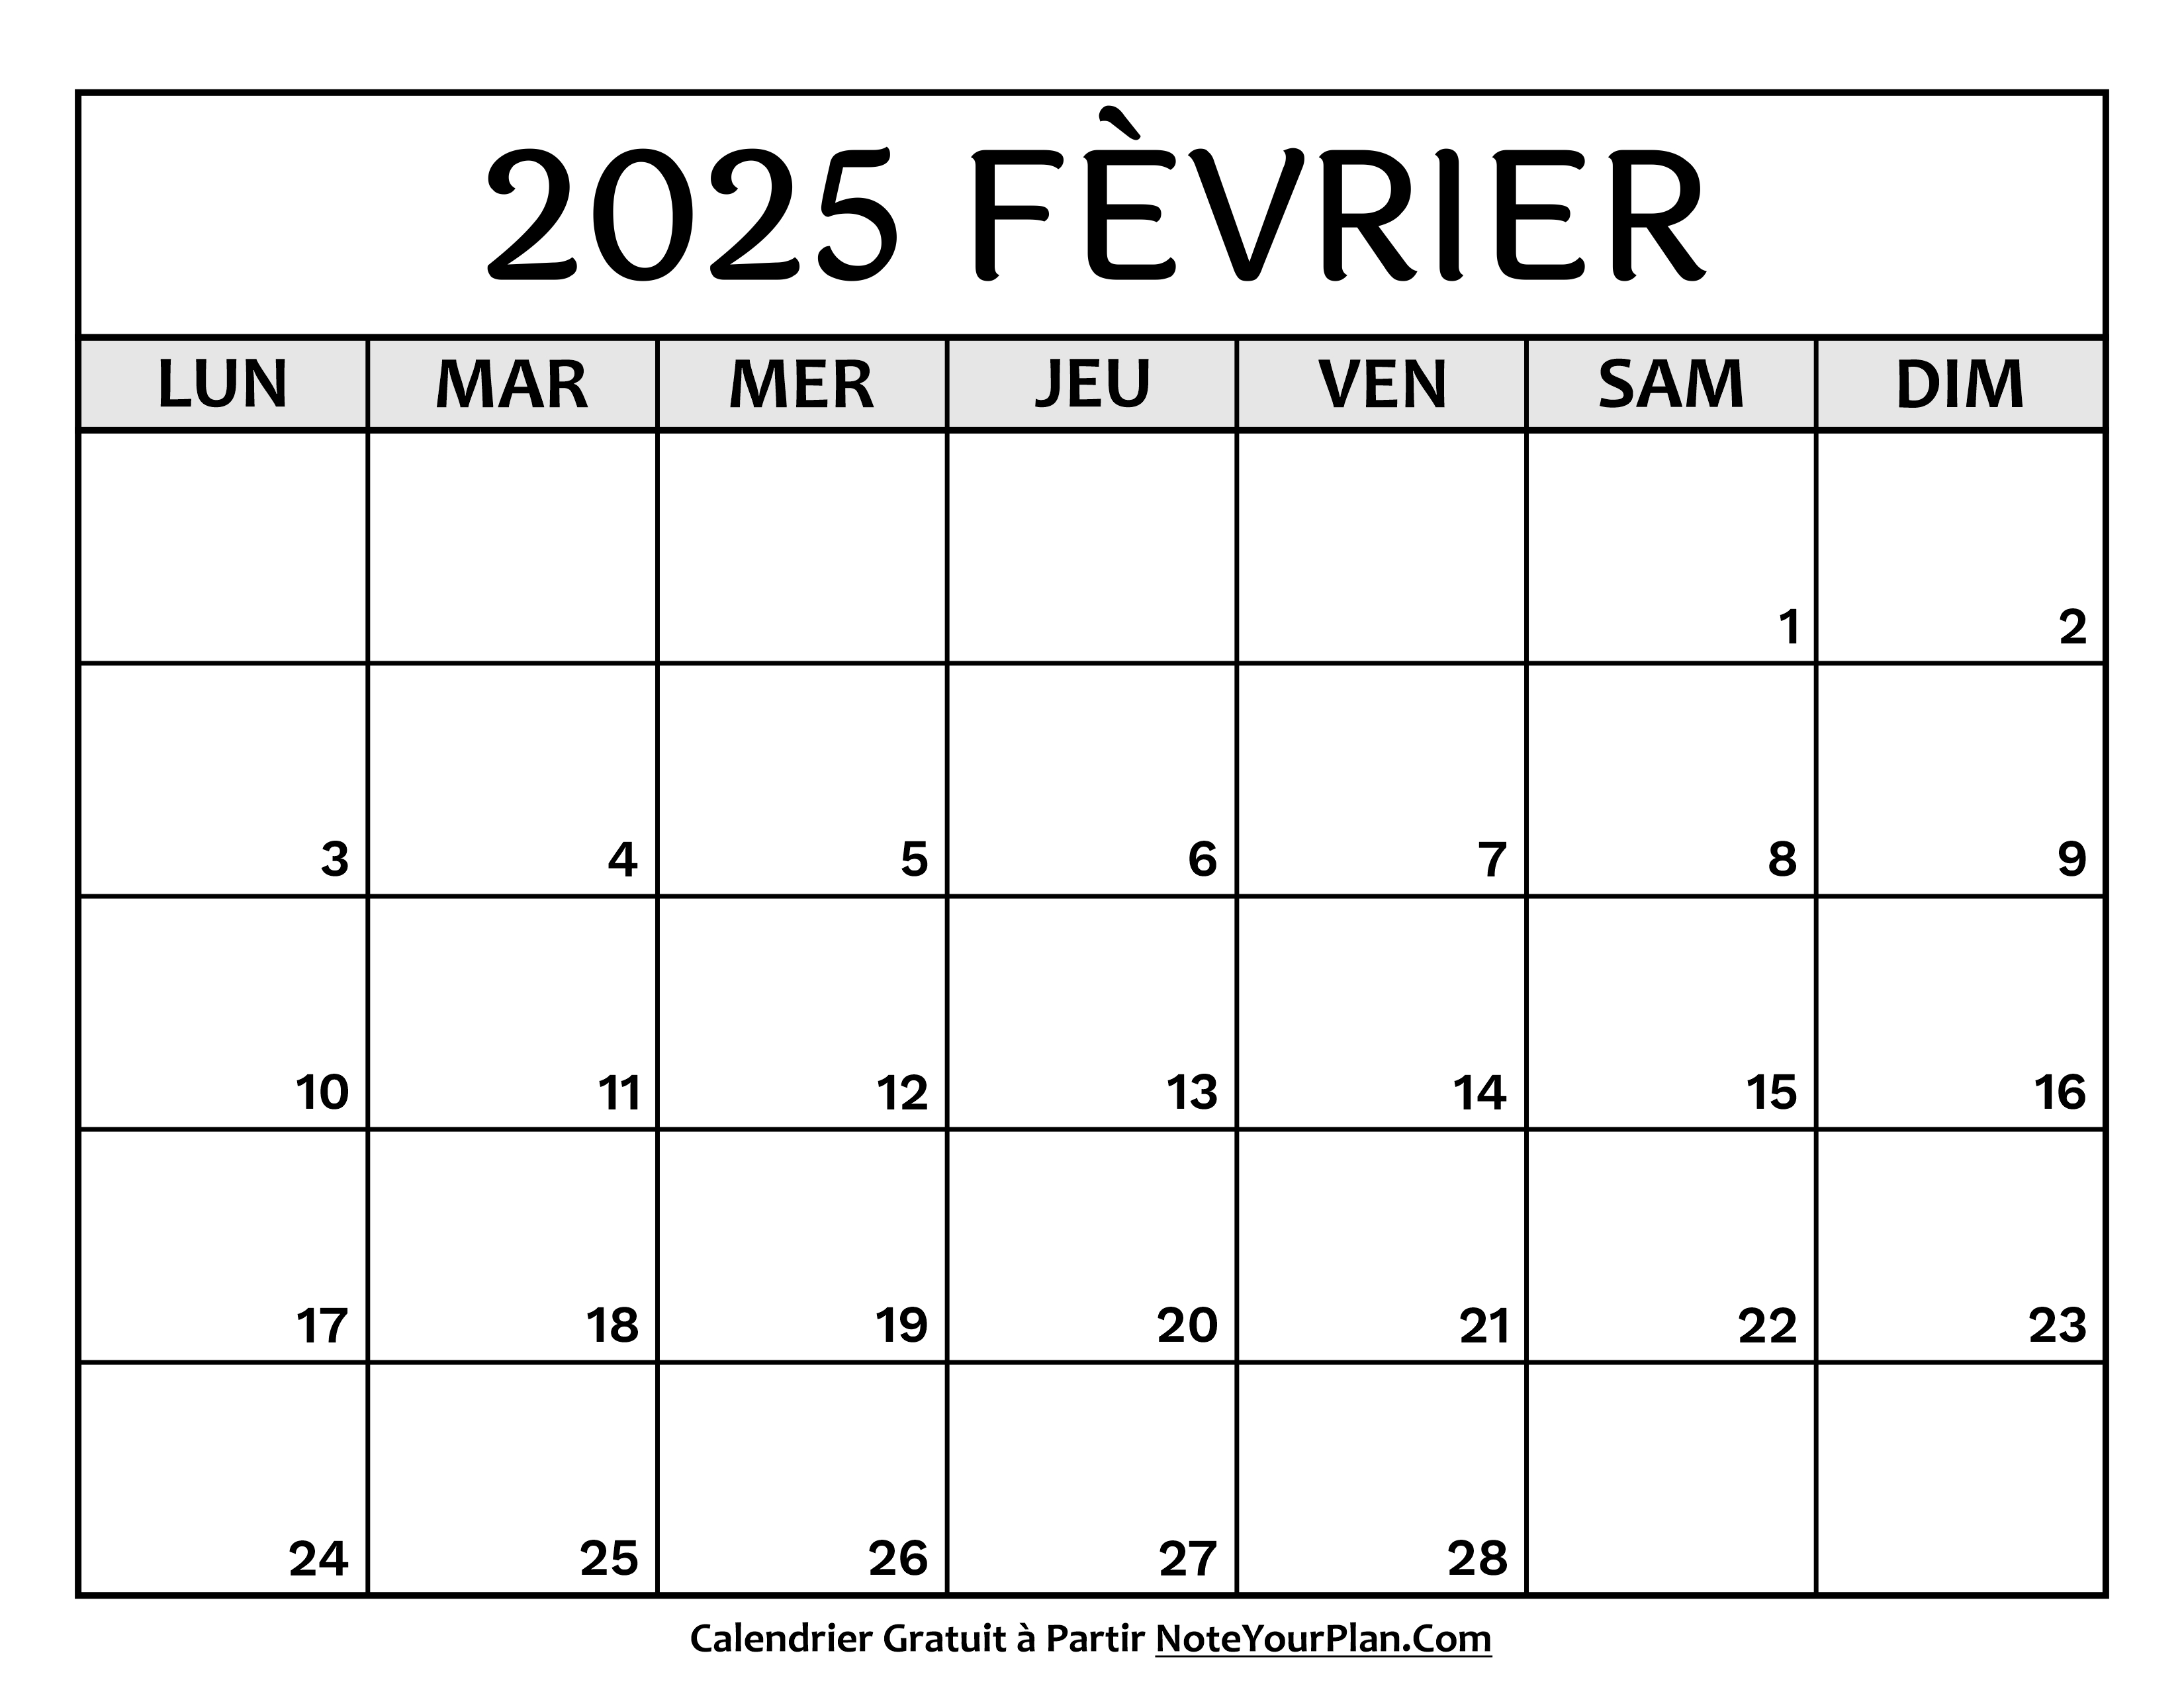 Calendrier Février 2025 à Imprimer